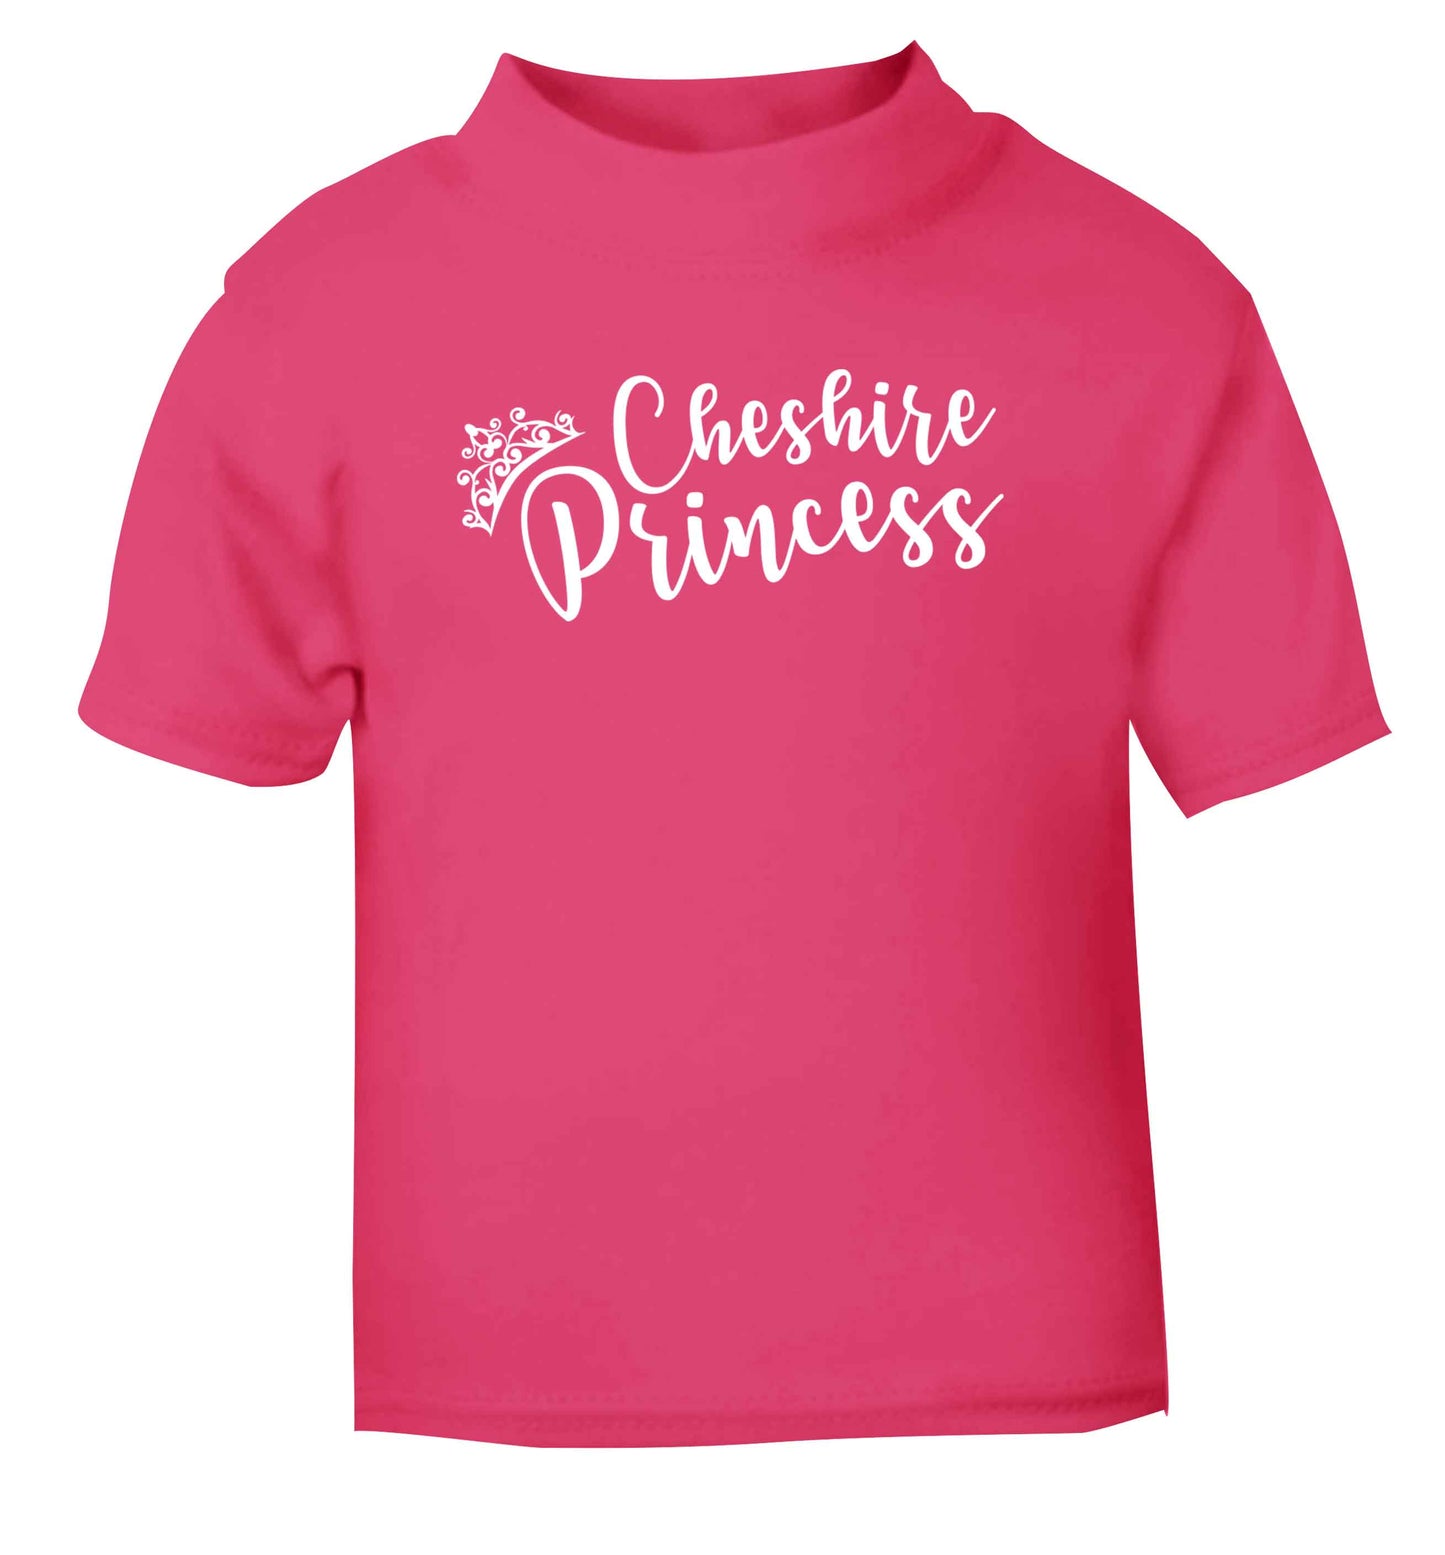 Cheshire princess pink Baby Toddler Tshirt 2 Years